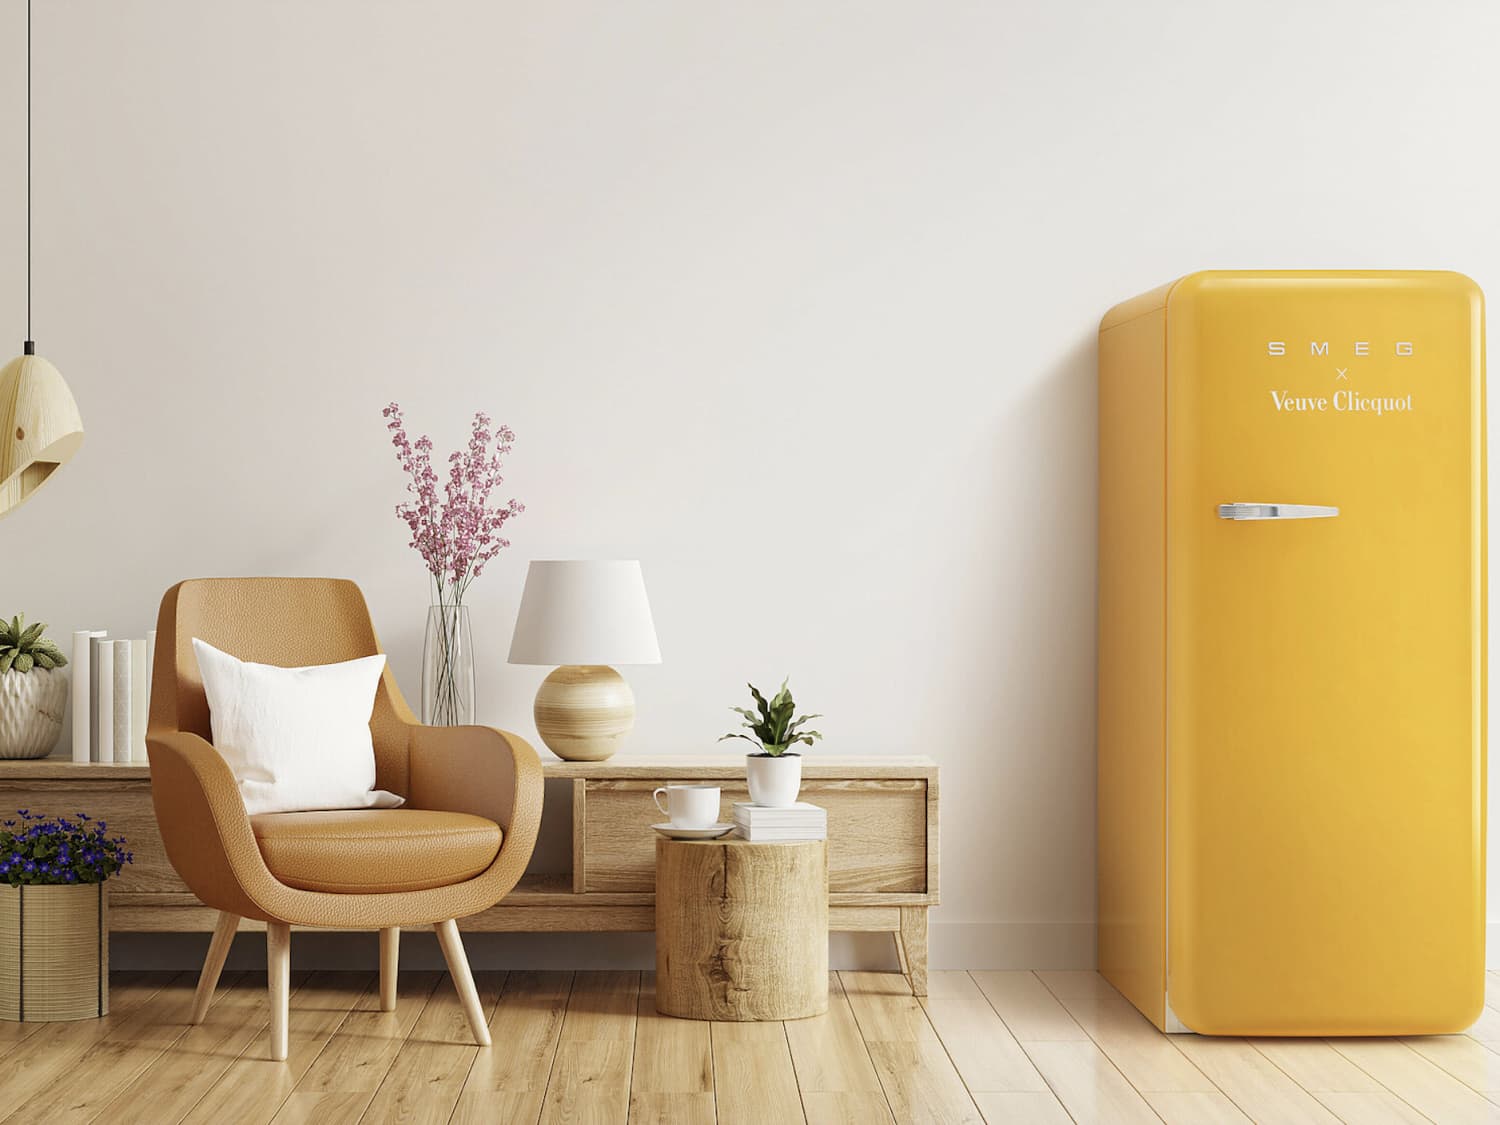 SMEG Refrigerator